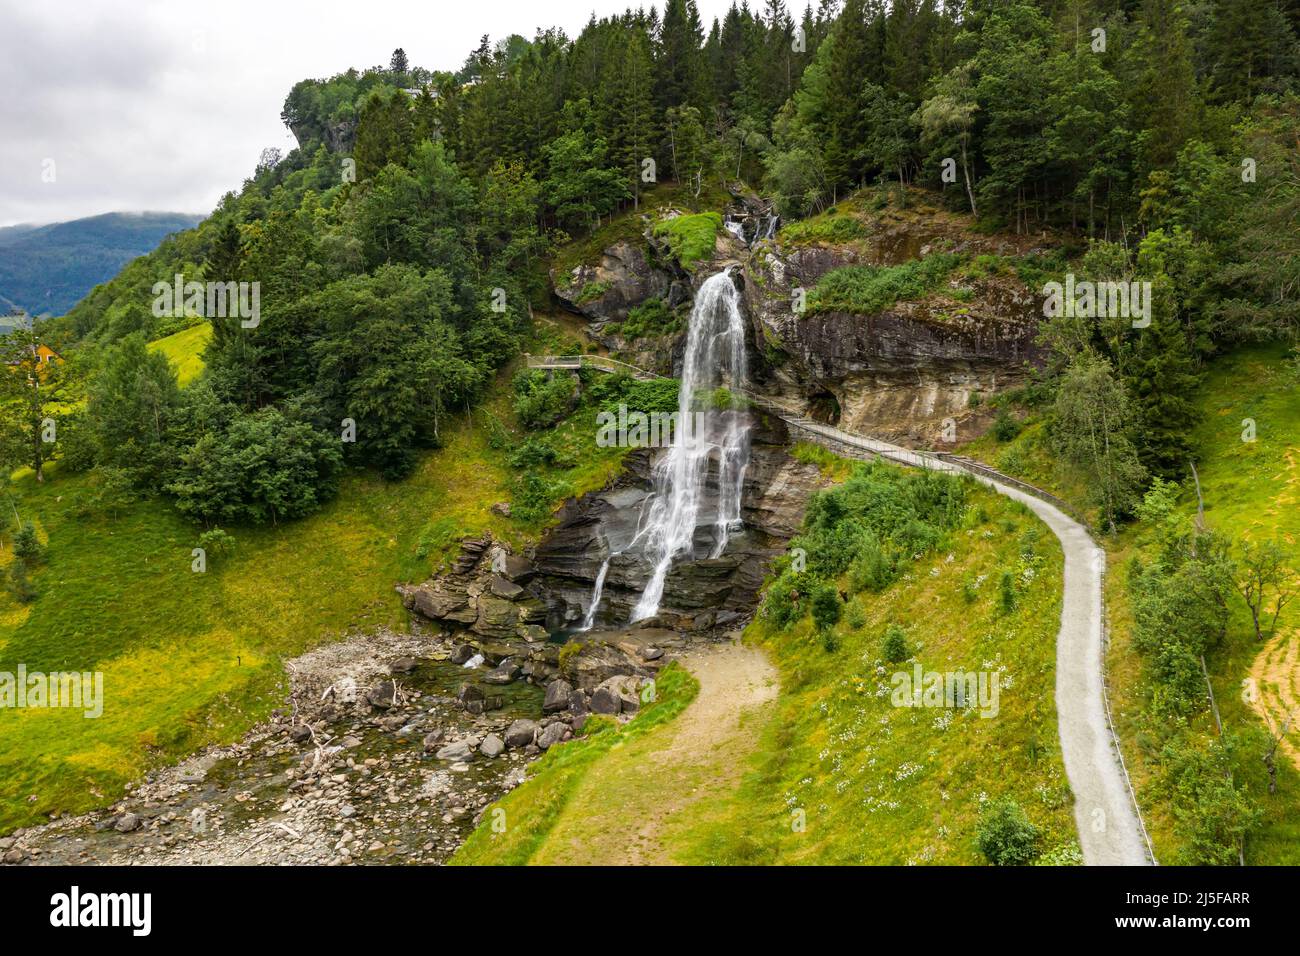 Steinsdalsfossen es una cascada situada en la localidad de Steine, en el municipio de Kvam, en el condado de Hordaland, Noruega. La cascada es una de las más Vis Foto de stock